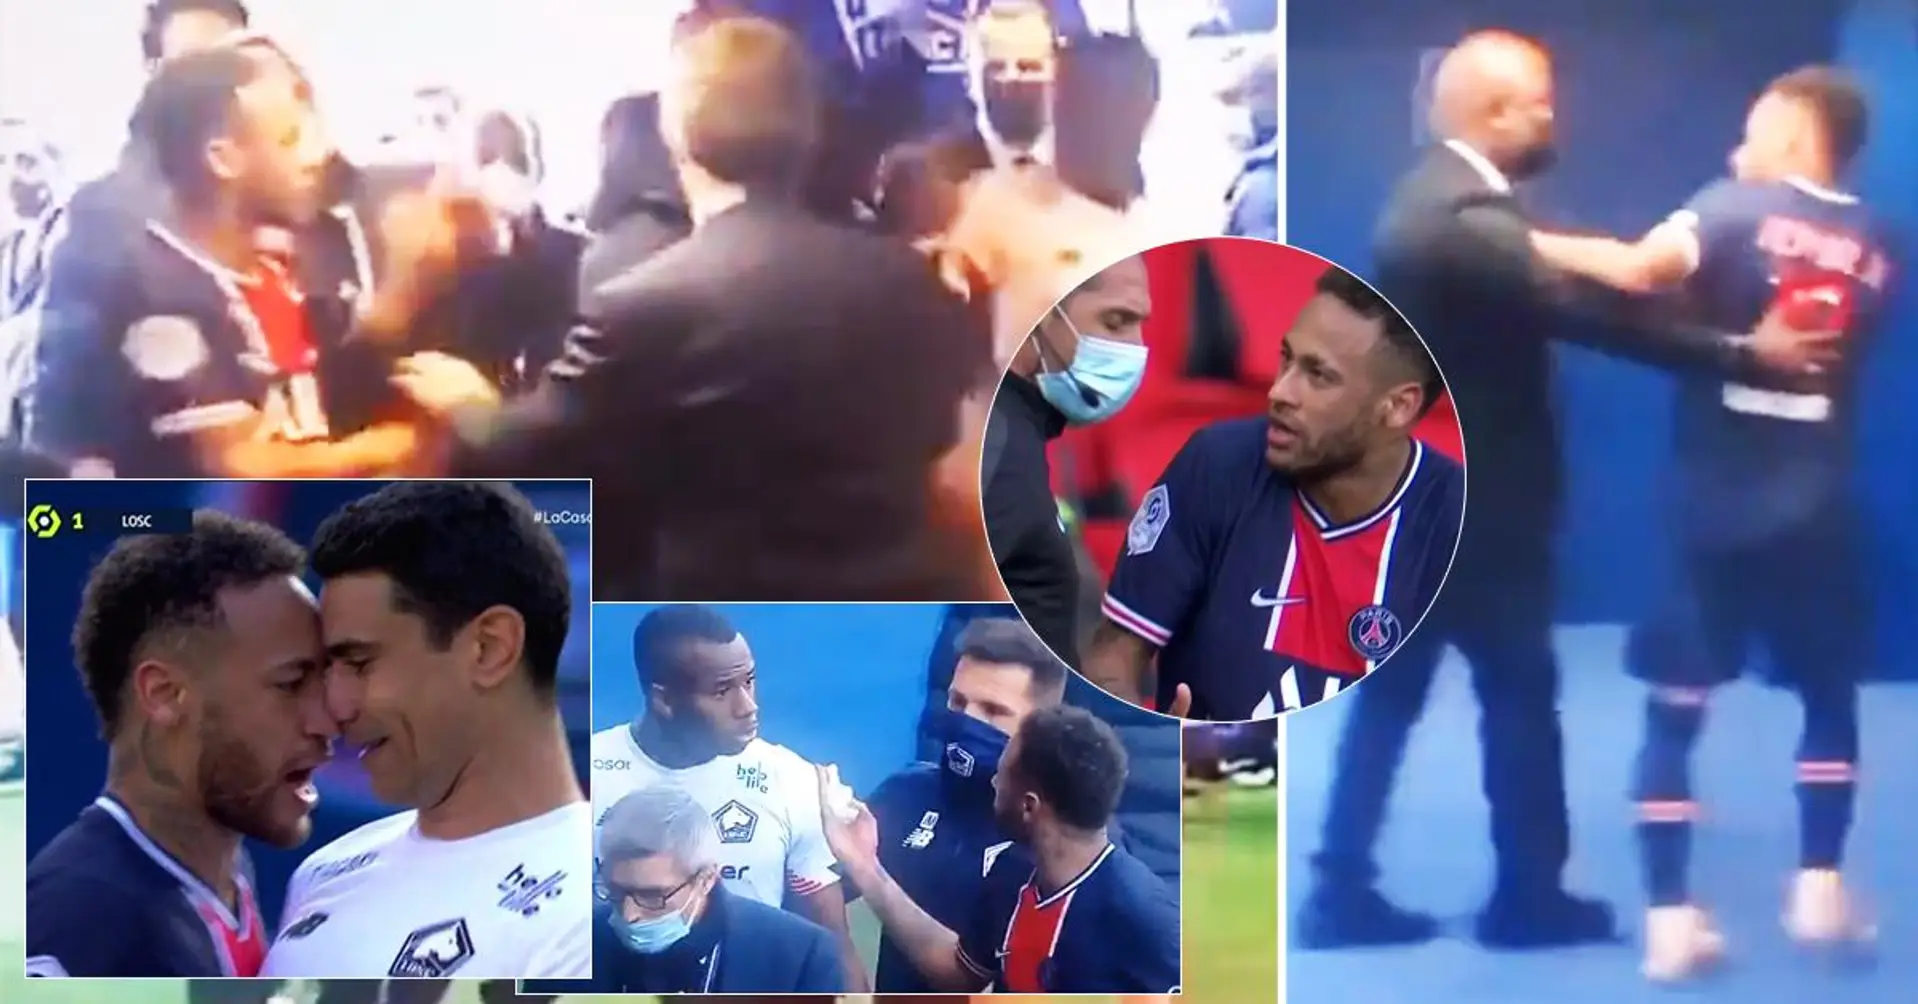 Der wütende Neymar hatte einen Kampf mit dem Lille-Spieler vor der Kamera, nachdem er vom Platz gestellt worden war